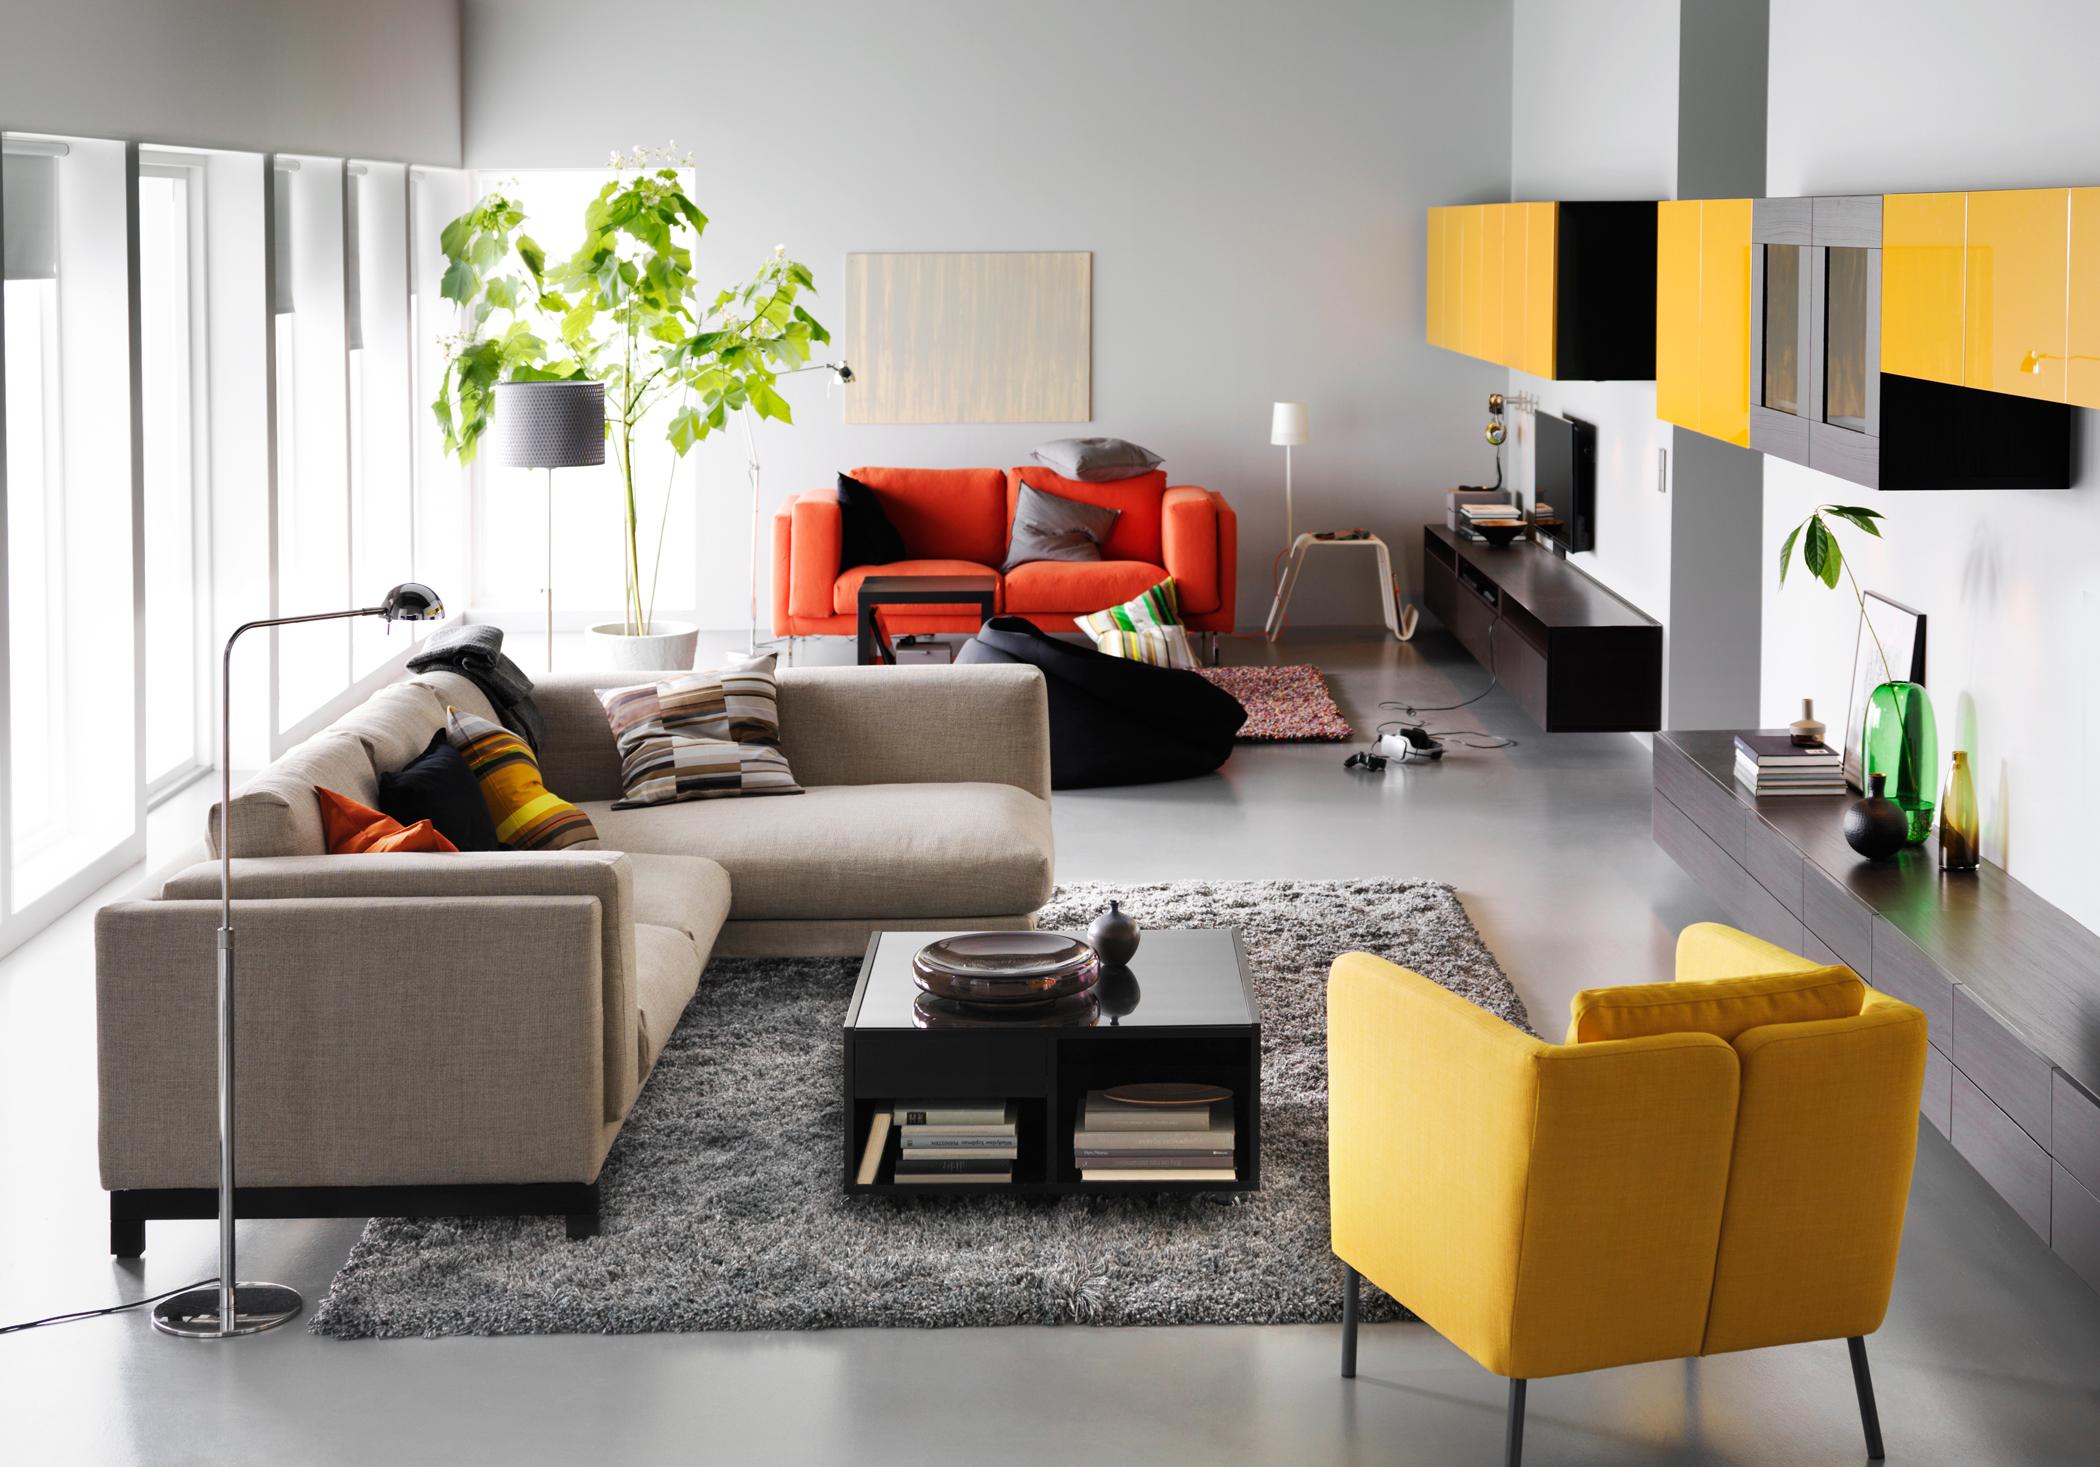 Mit farbigen Akzenten einrichten #teppich #wohnzimmer #hängeschrank #sessel #stehlampe #ikea #sofa #grauessofa #gelbersessel #rotessofa ©Inter IKEA Systems B.V.